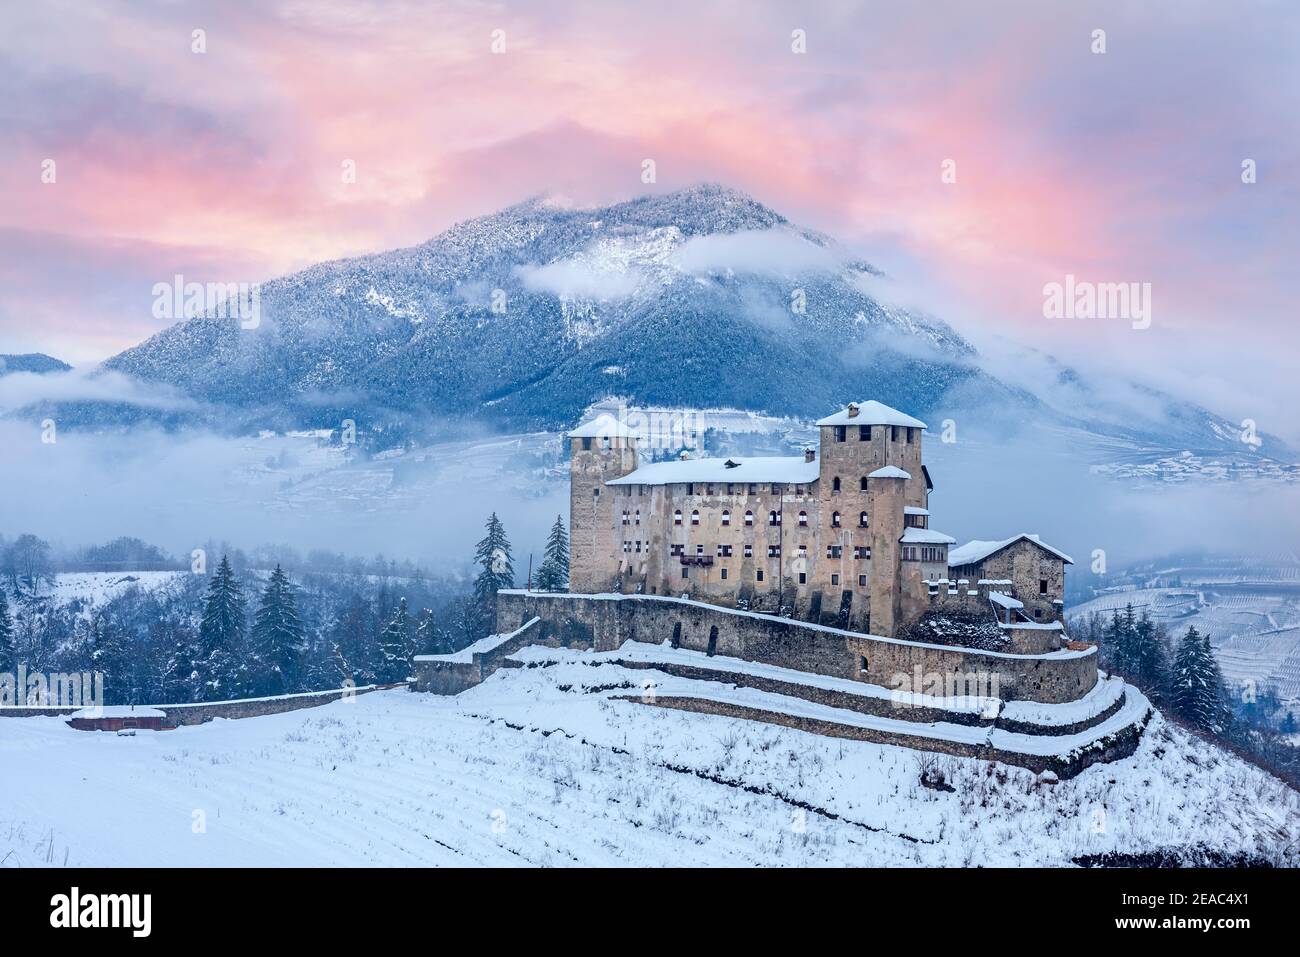 Castello di Cles all'alba. Europa, Italia, Trentino Alto Adige, Val di non, Cles Foto Stock